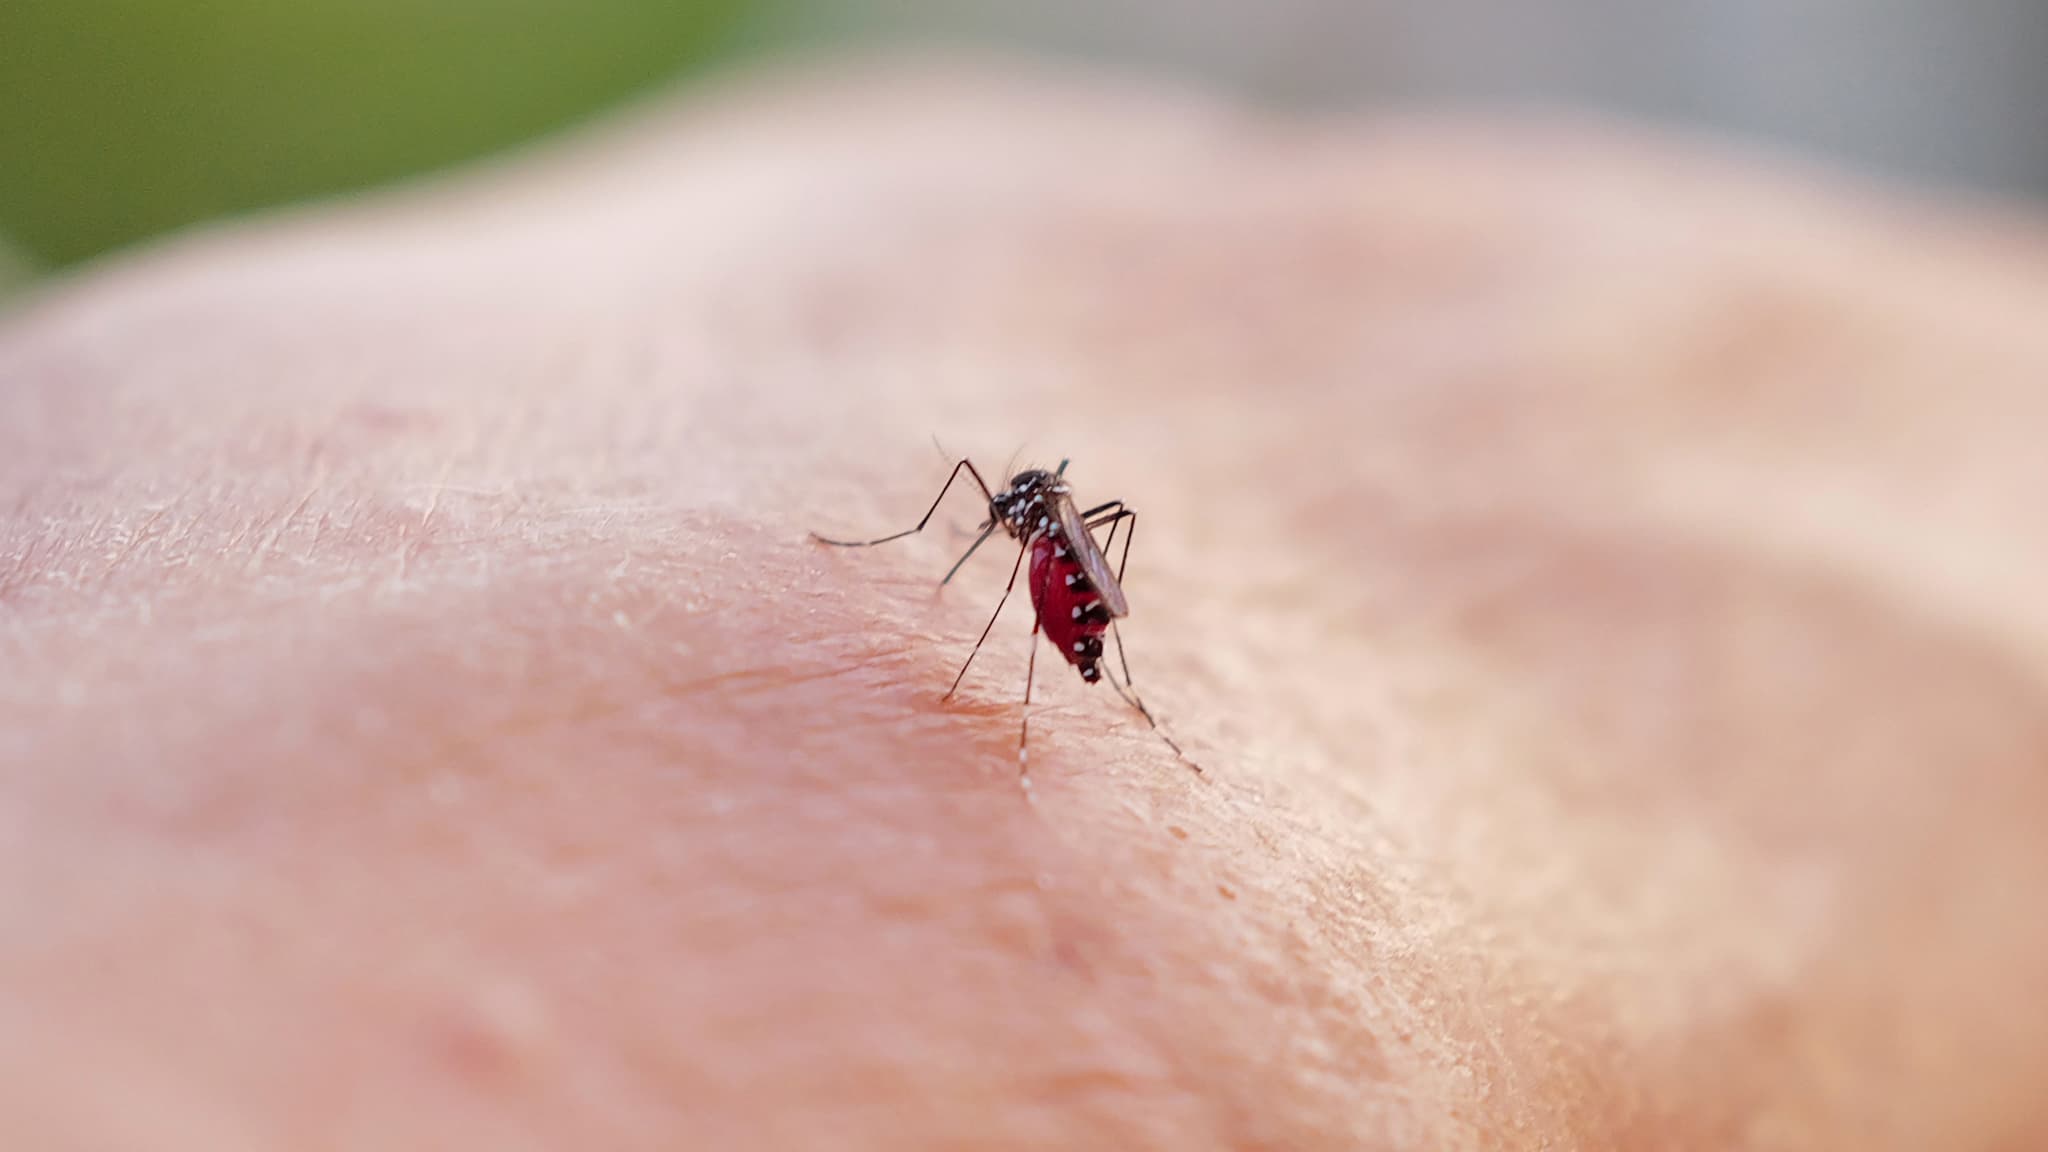 W miarę zbliżania się lata zagraża rozprzestrzenianie się komarów tygrysich